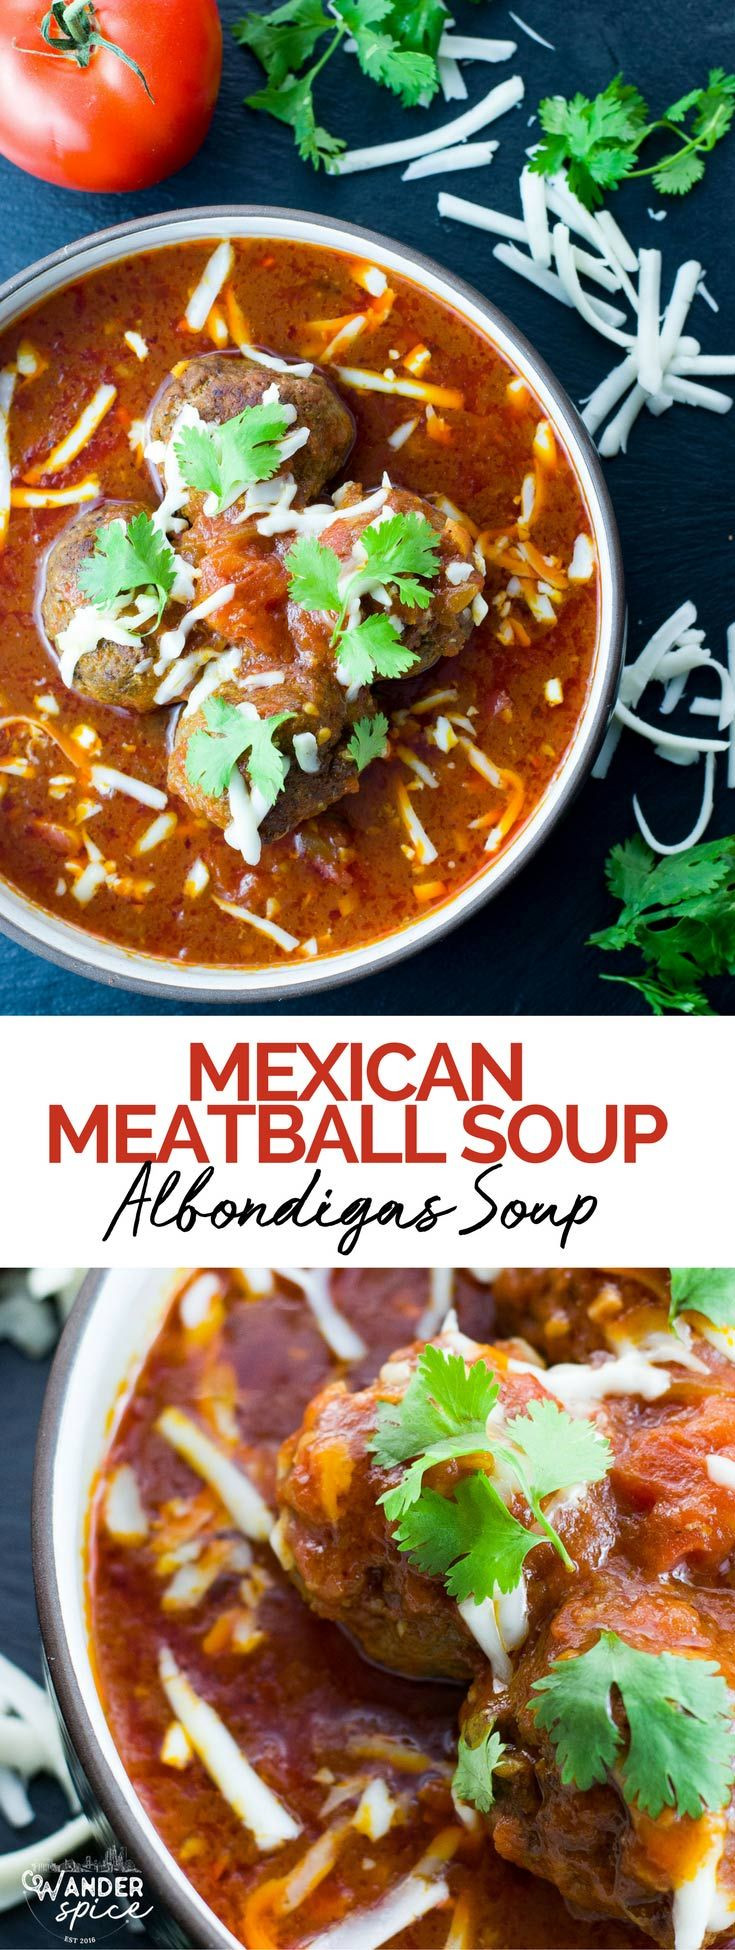 Albondigas Soup Recipe Mexican Keto
 Albondigas Soup Recipe All Recipes